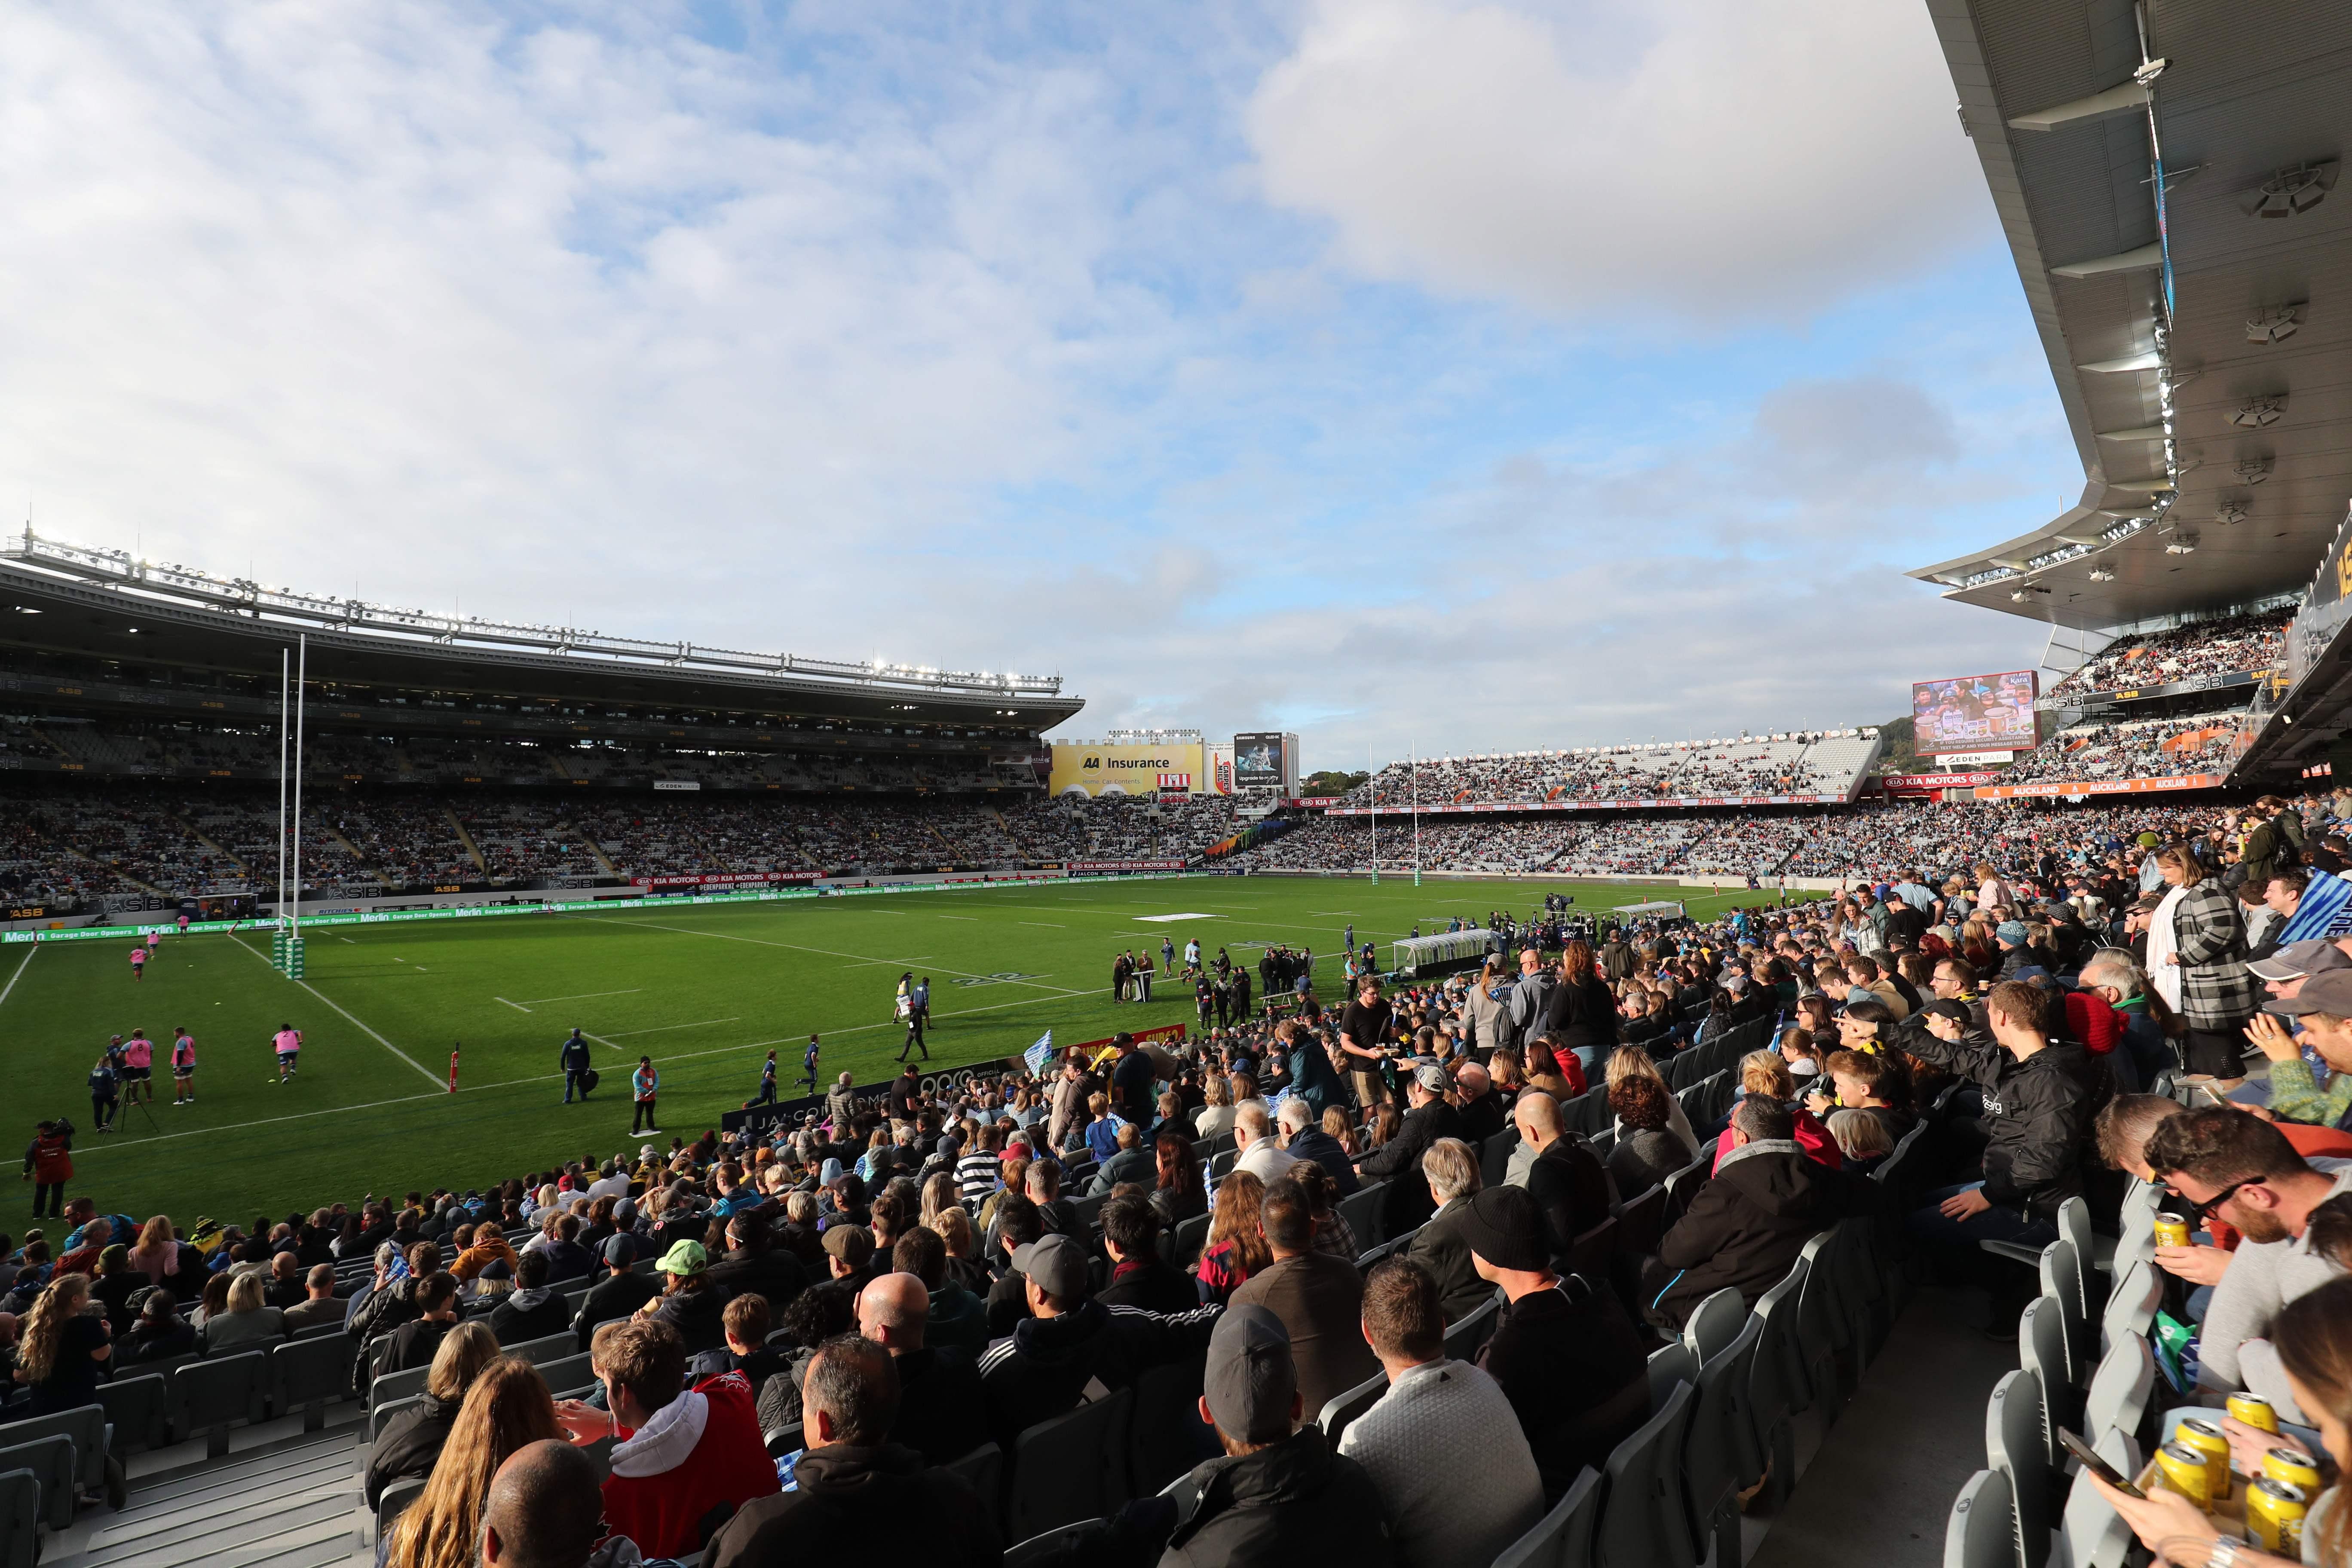 Corona-Ticker: 43.000 Fans bei Rugby-Spiel in Neuseeland